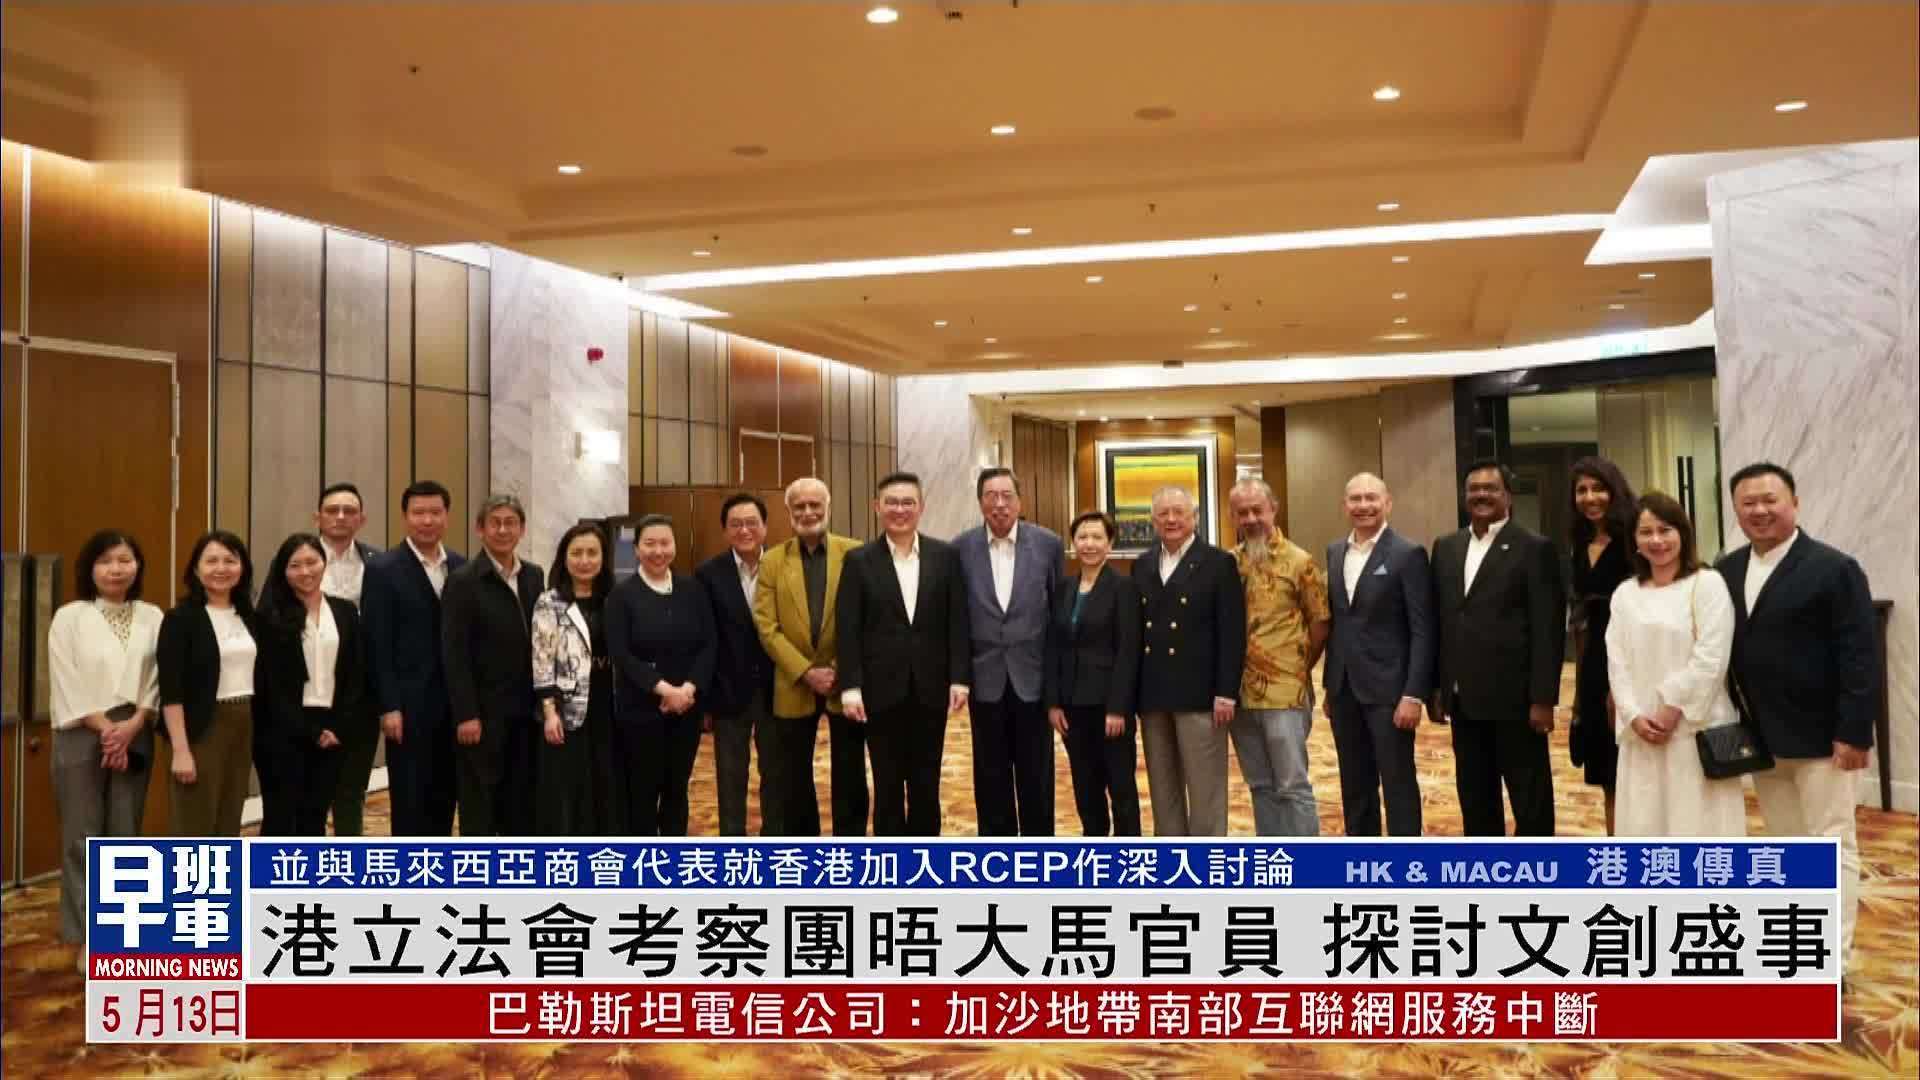 香港立法会考察团晤大马官员 探讨文创盛事